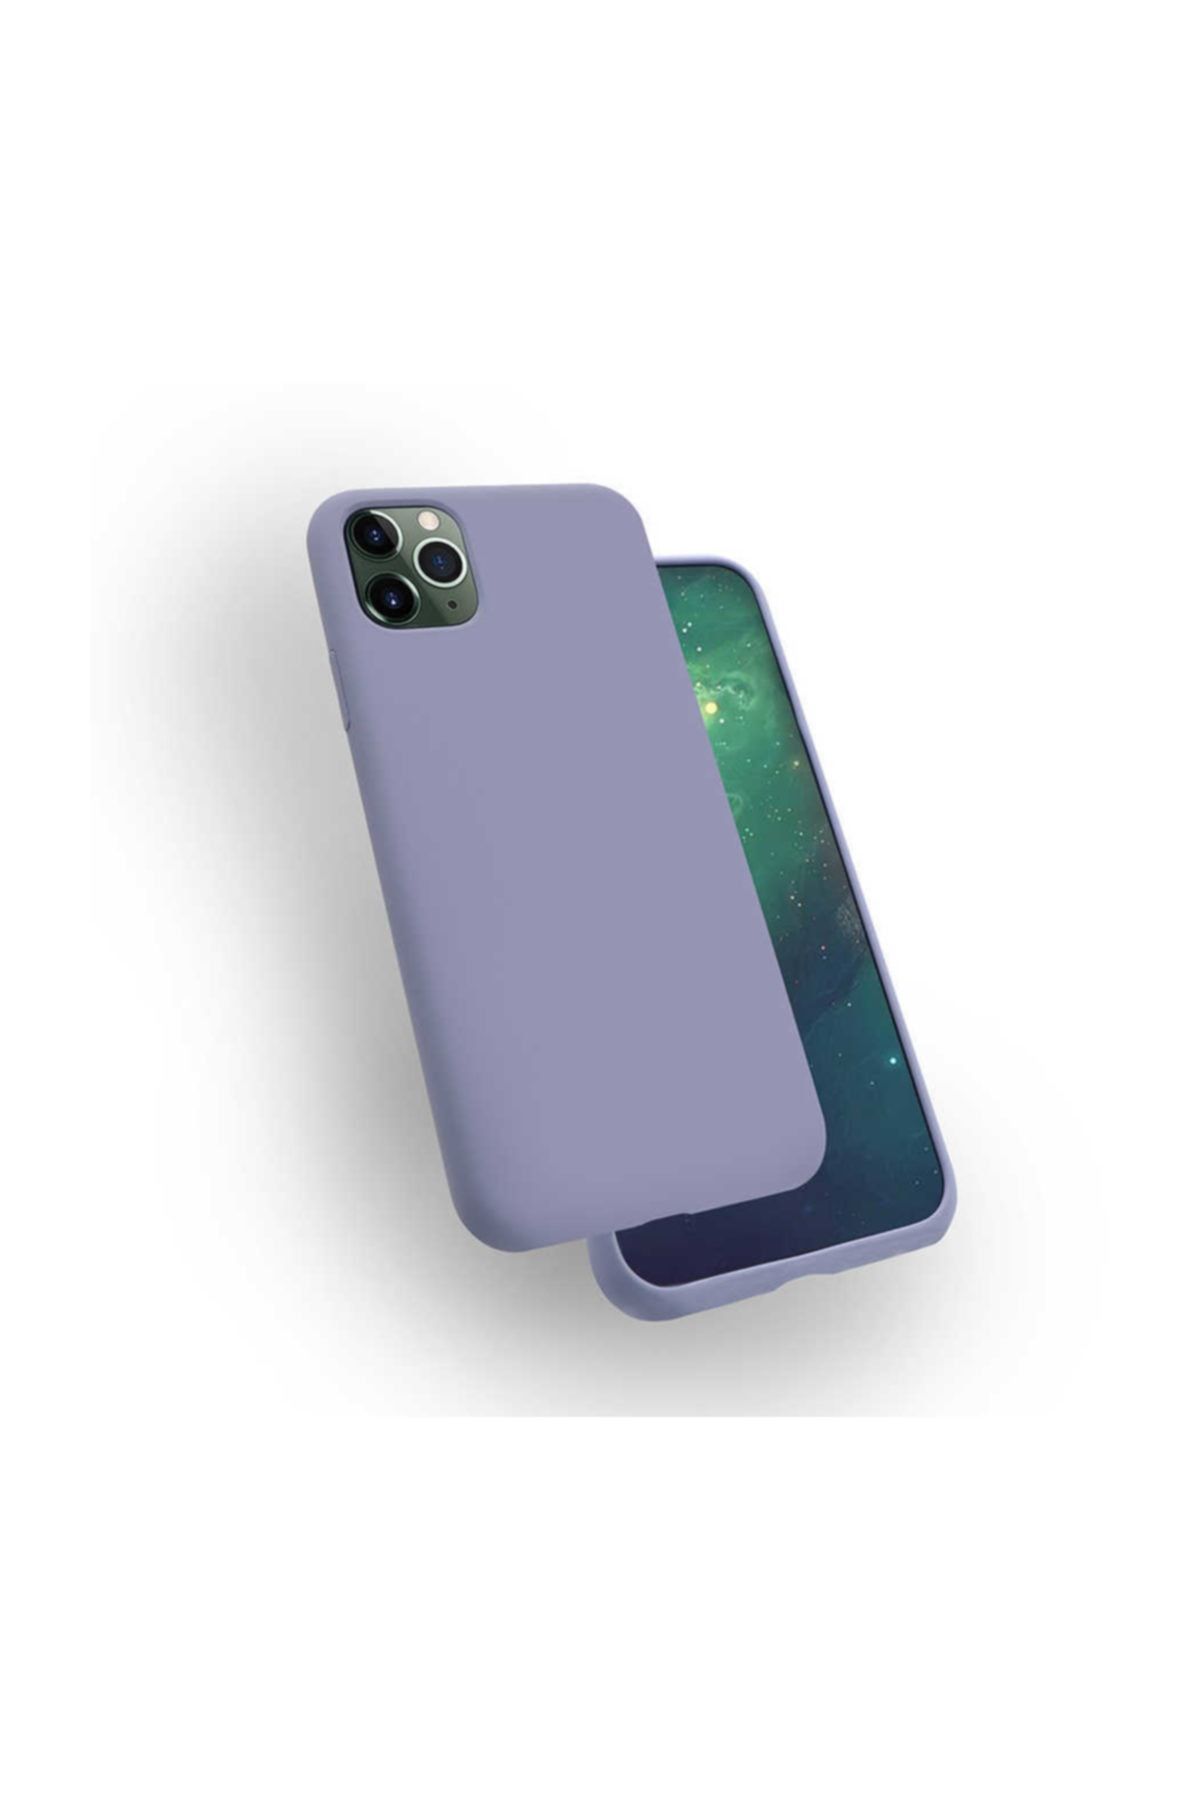 Zore Apple Iphone 11 Pro Max Kılıf Silk Silikon Kapak Kılıf